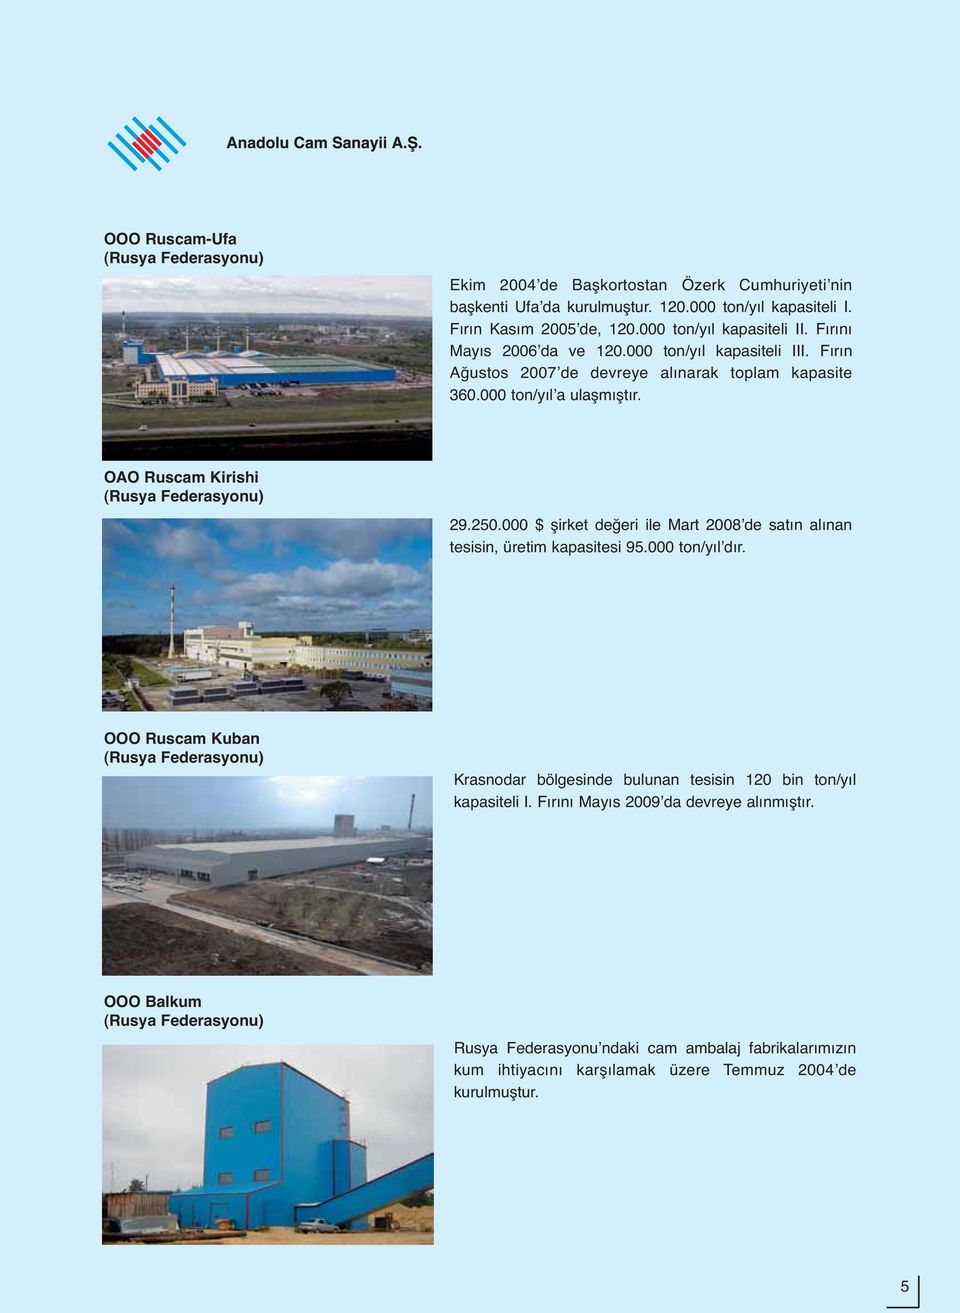 OAO Ruscam Kirishi (Rusya Federasyonu) 29.250.000 $ şirket değeri ile Mart 2008ʼde satın alınan tesisin, üretim kapasitesi 95.000 ton/yılʼdır.